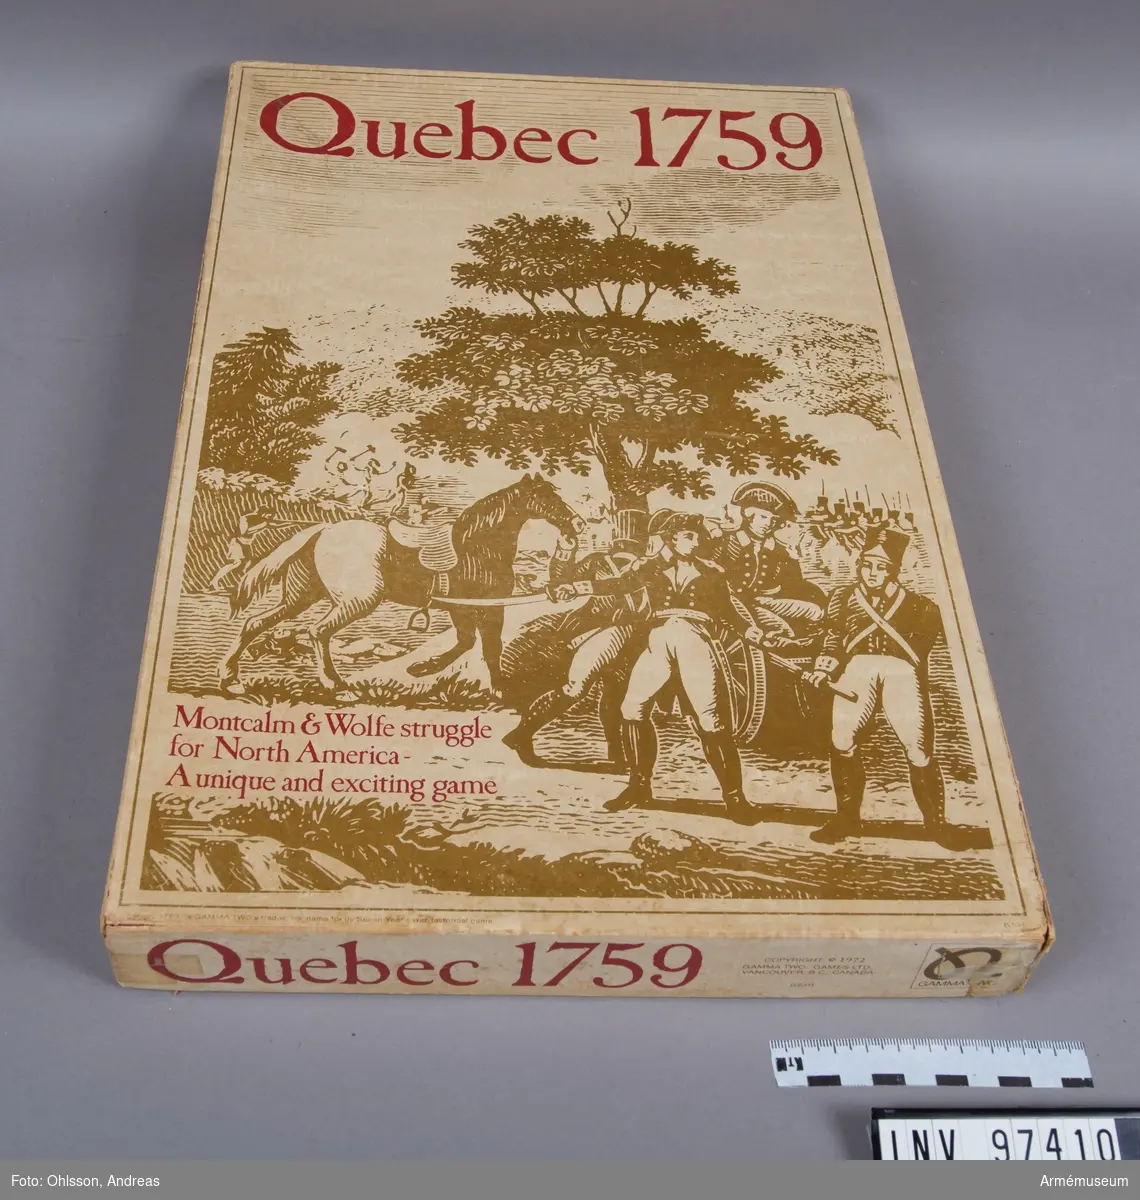 Spelet består av en spelplan i två delar som föreställer en karta över Quebec 1759, 7 tärningar, ett häfte med spelinstruktioner samt ett 50-tal rektangulära träklossar med varierande motiv i rött, blått, brunt och grönt.